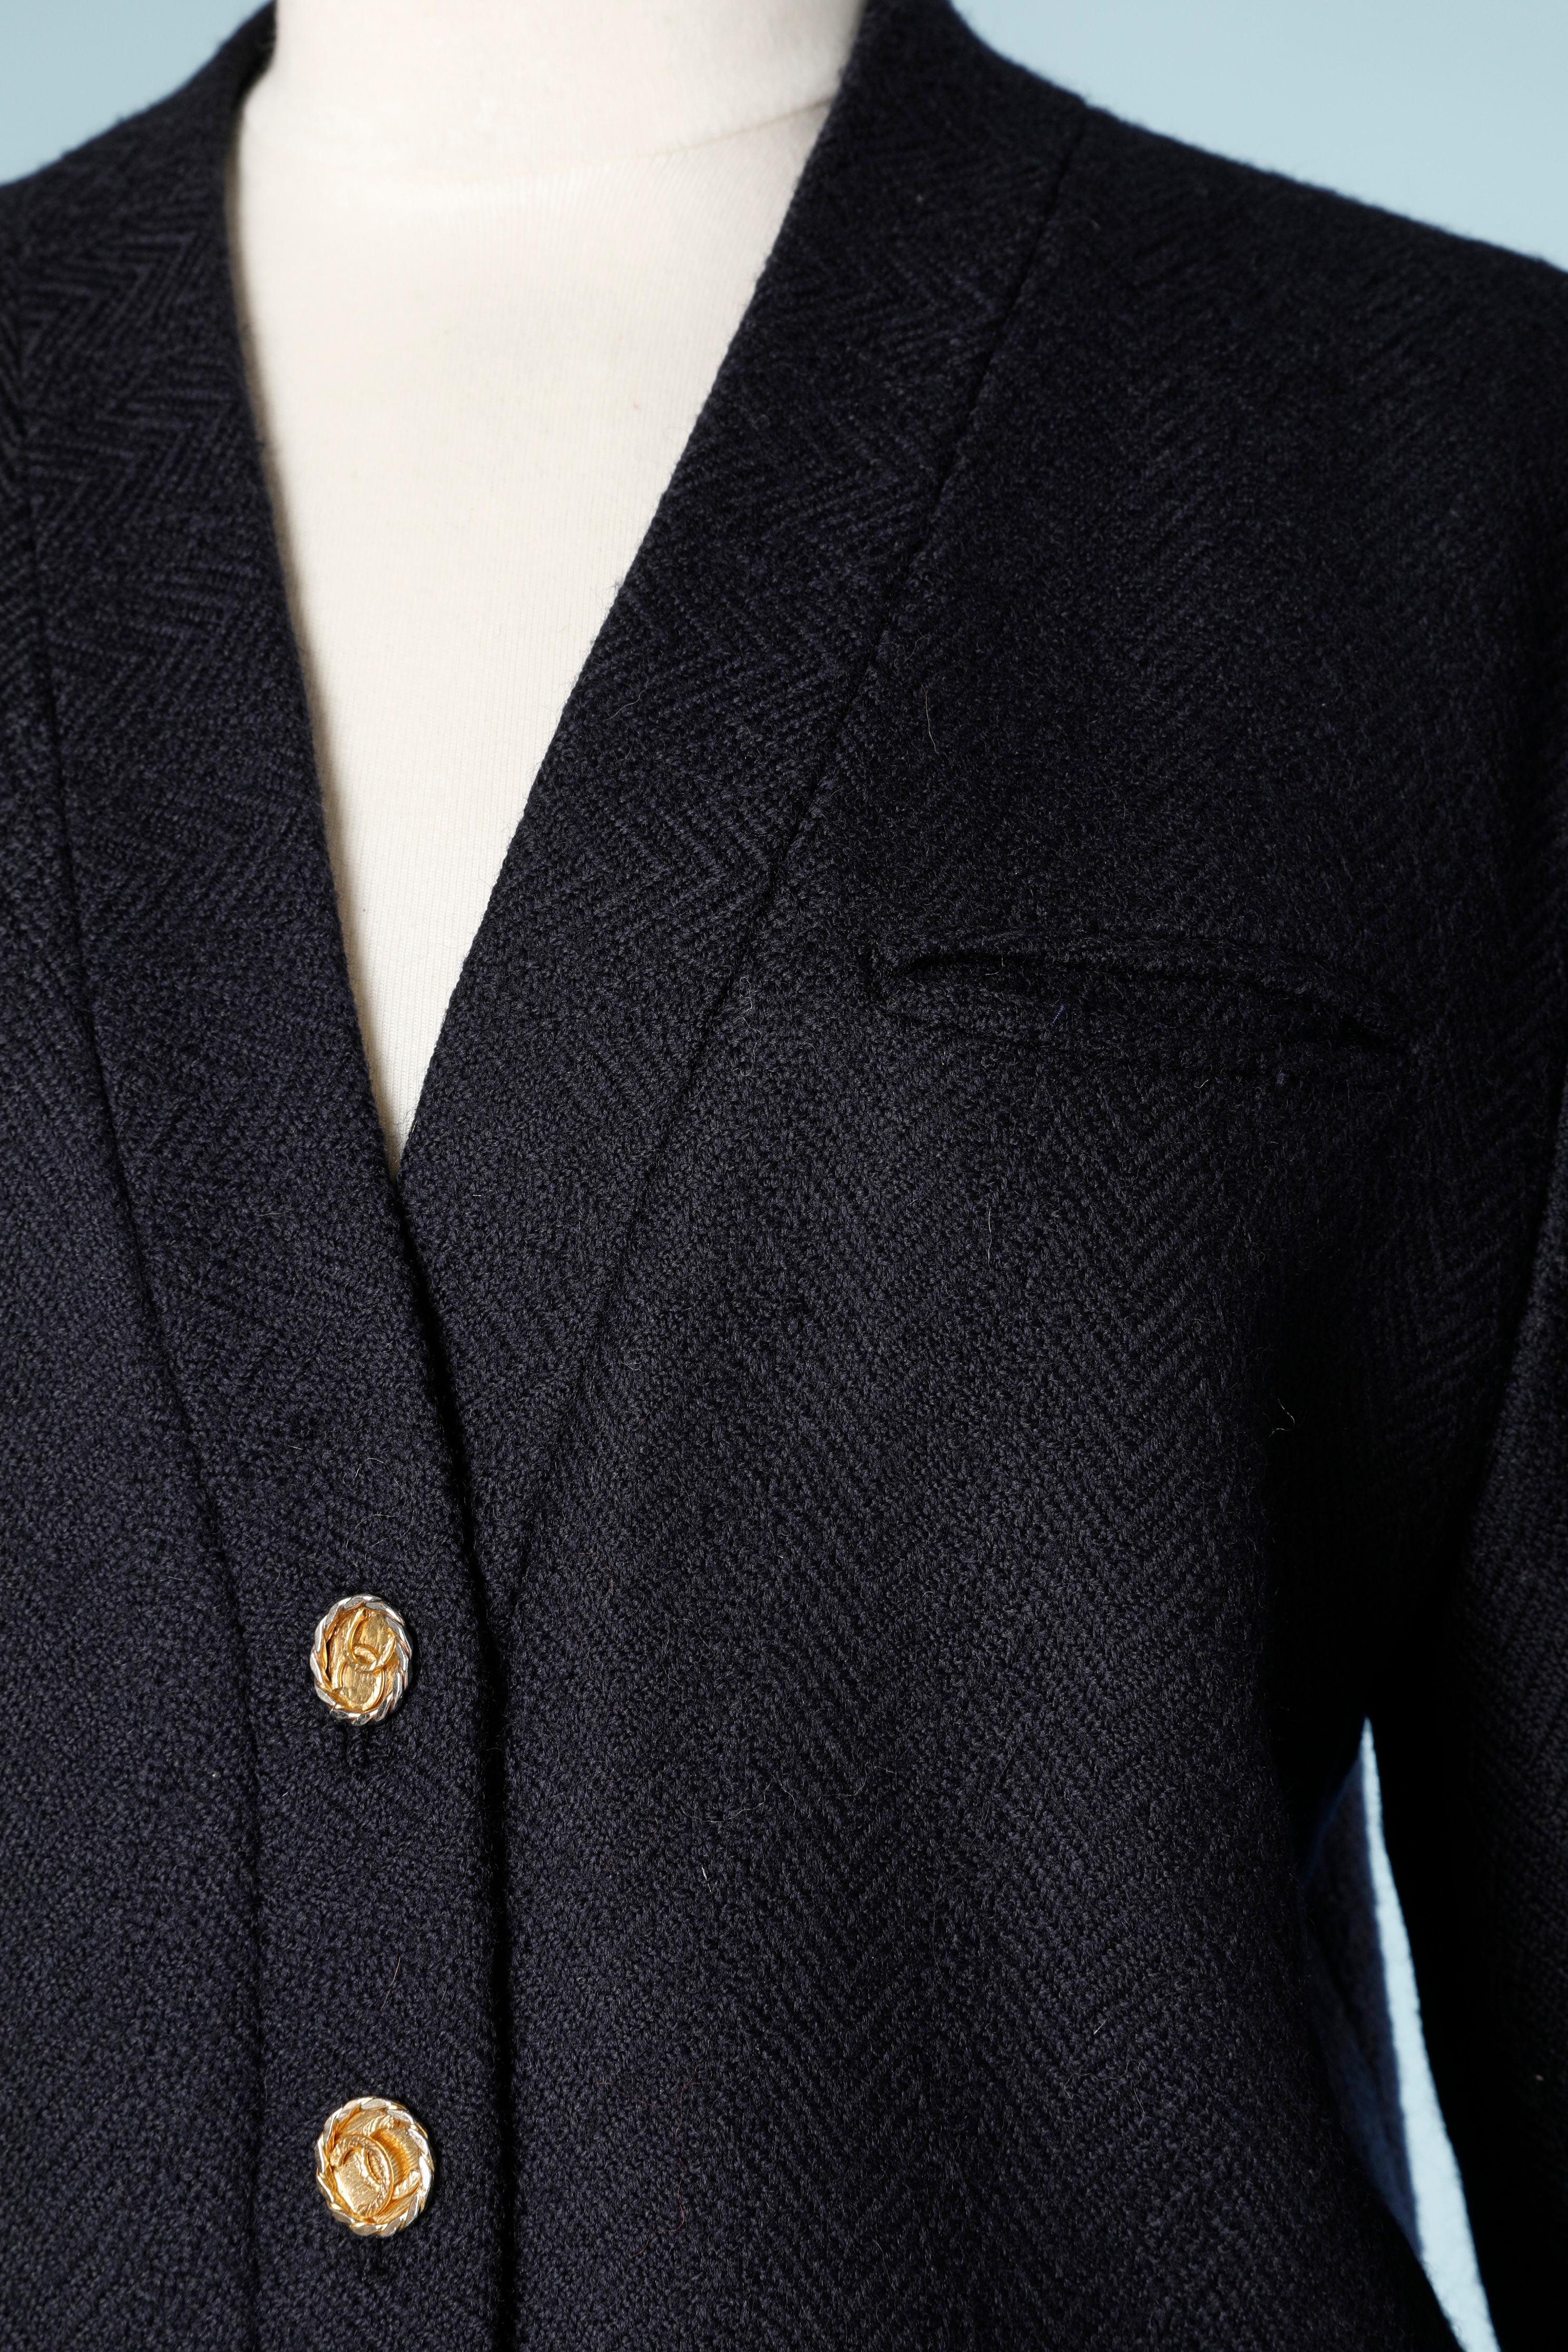 Costume jupe en laine bleu marine avec boutons de marque. Motif chevron ton sur ton 
TAILLE : 38 Fr ( Jupe 36 Fr) 